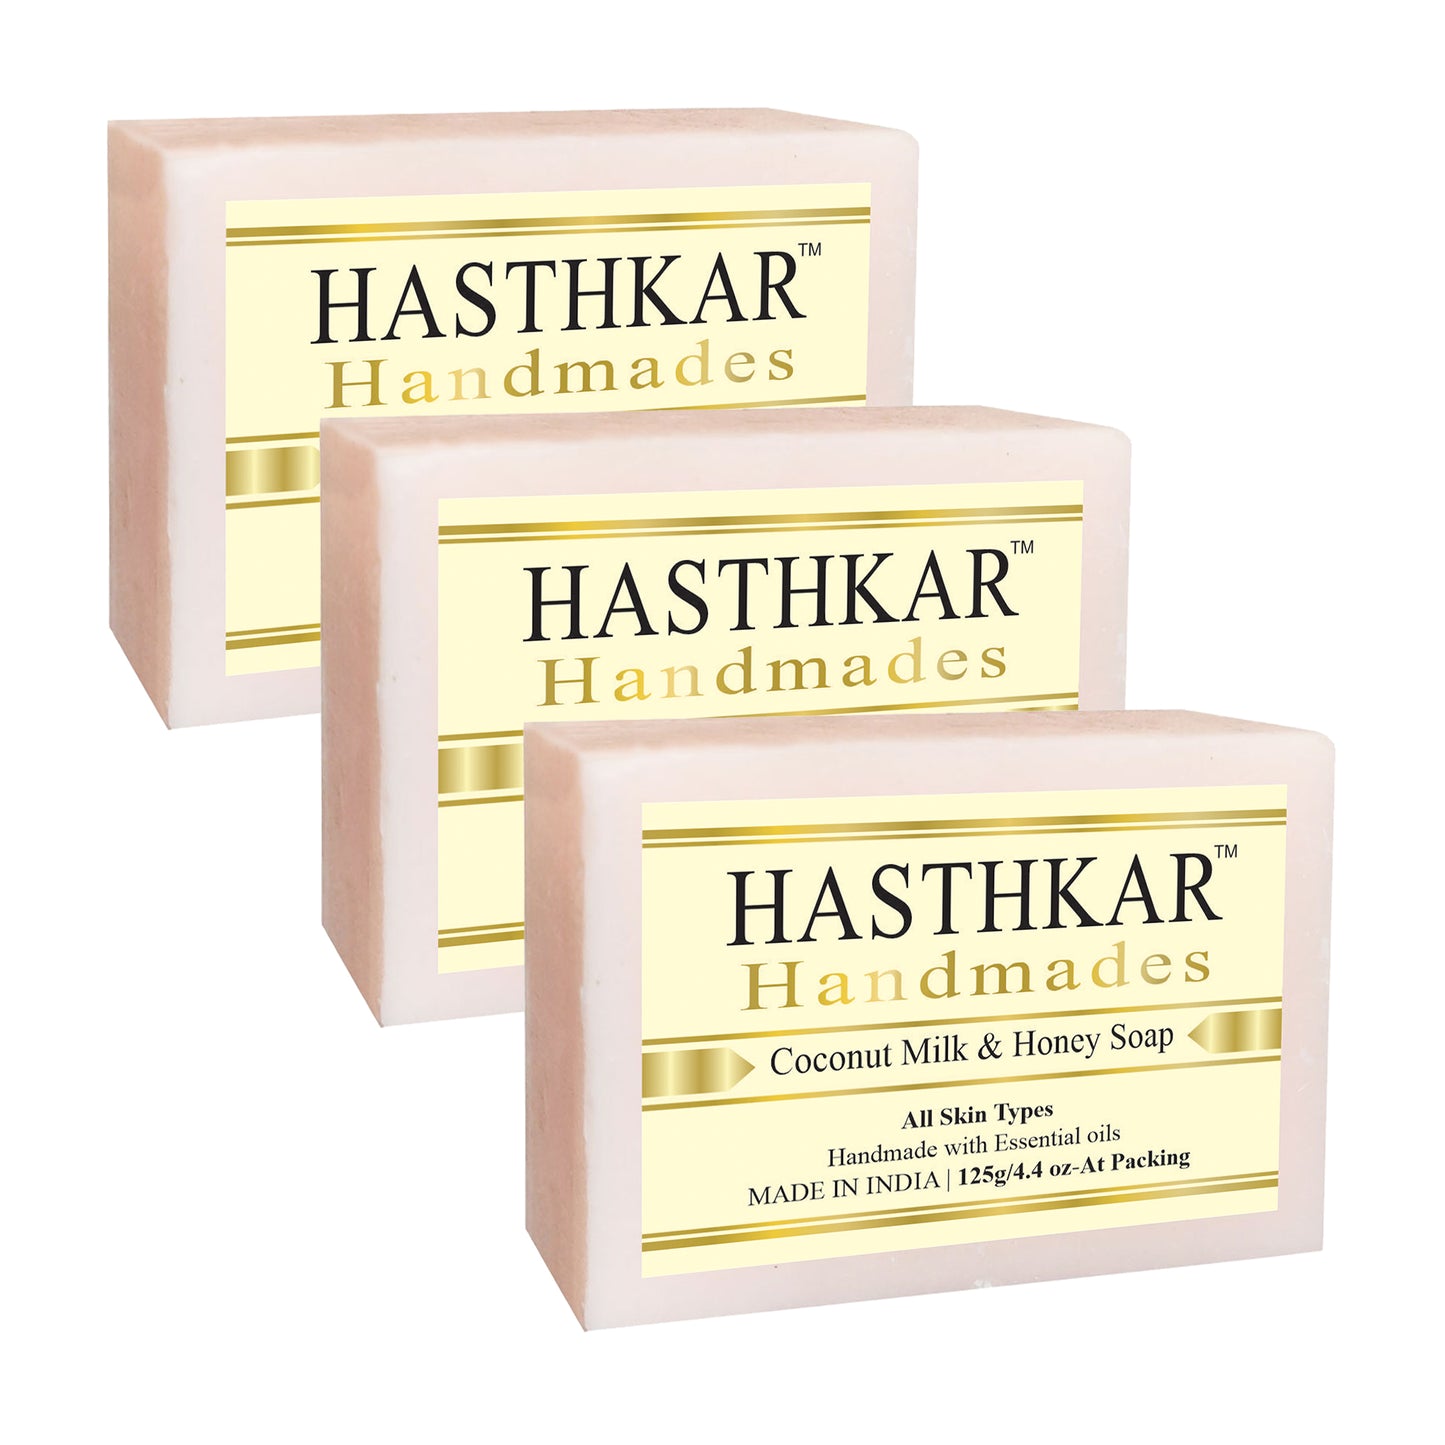 Hasthkar handmades coconut bathing soap men women pack of 3